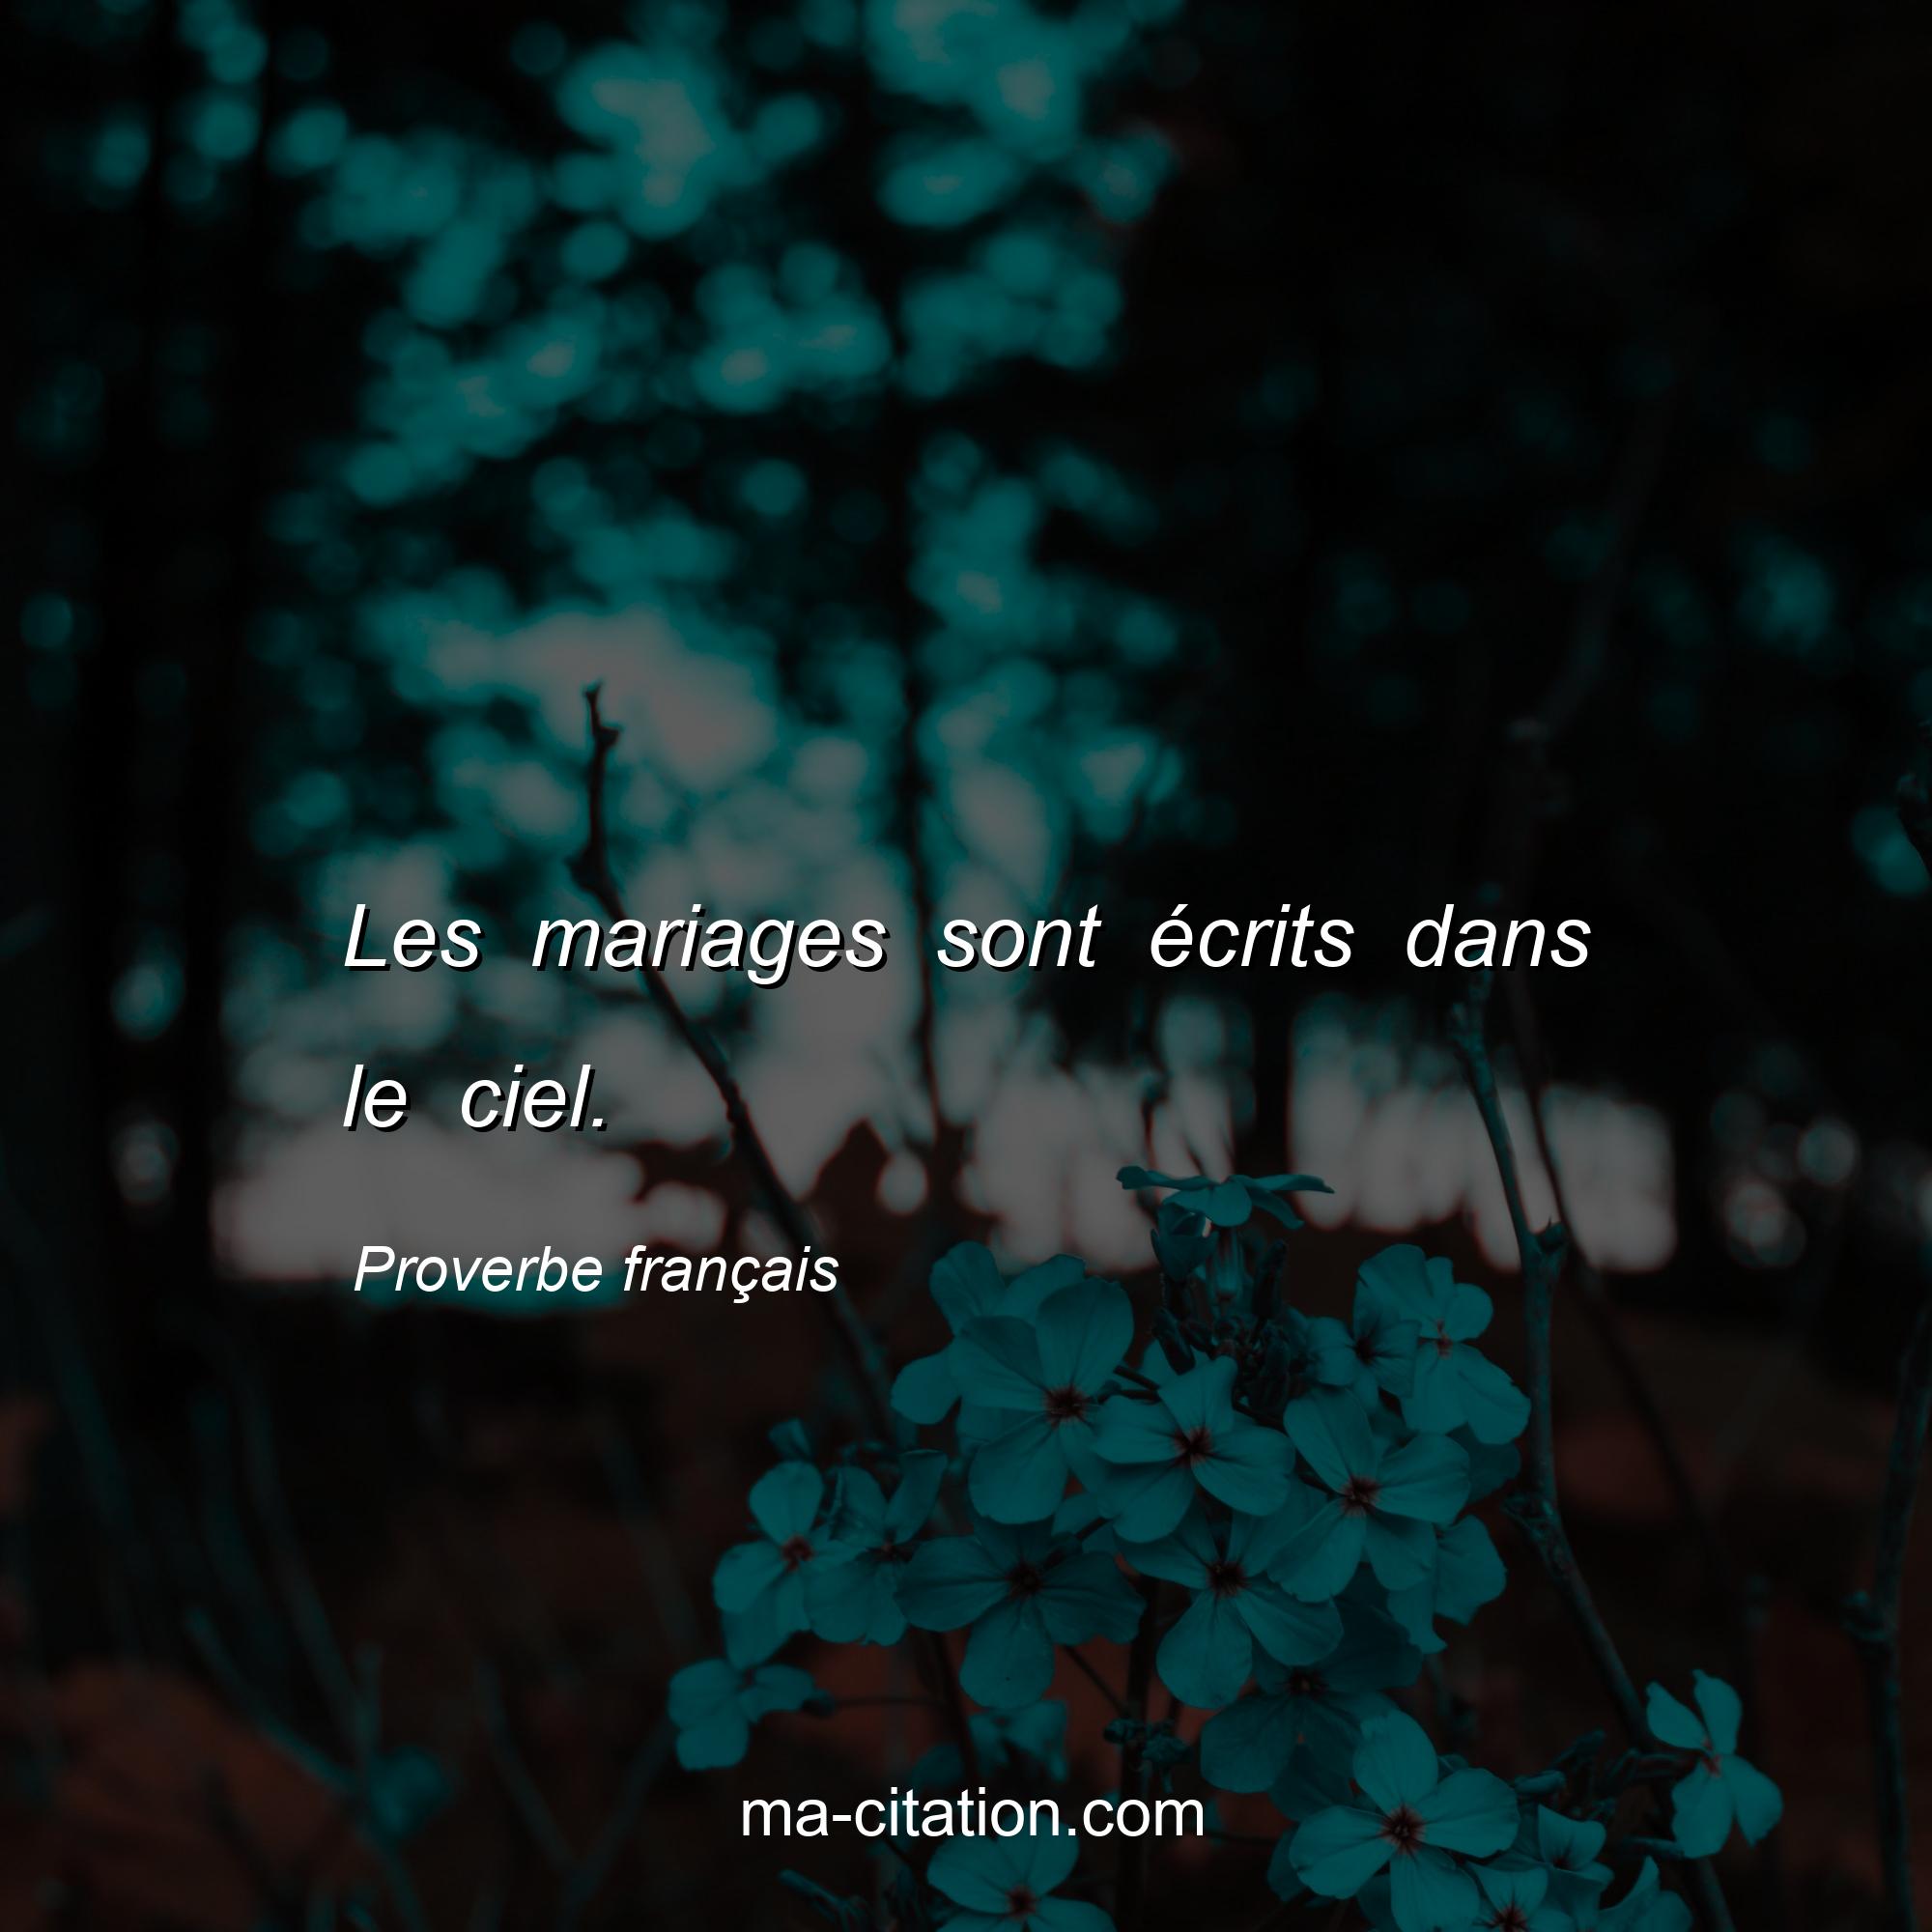 Proverbe français : Les mariages sont écrits dans le ciel.